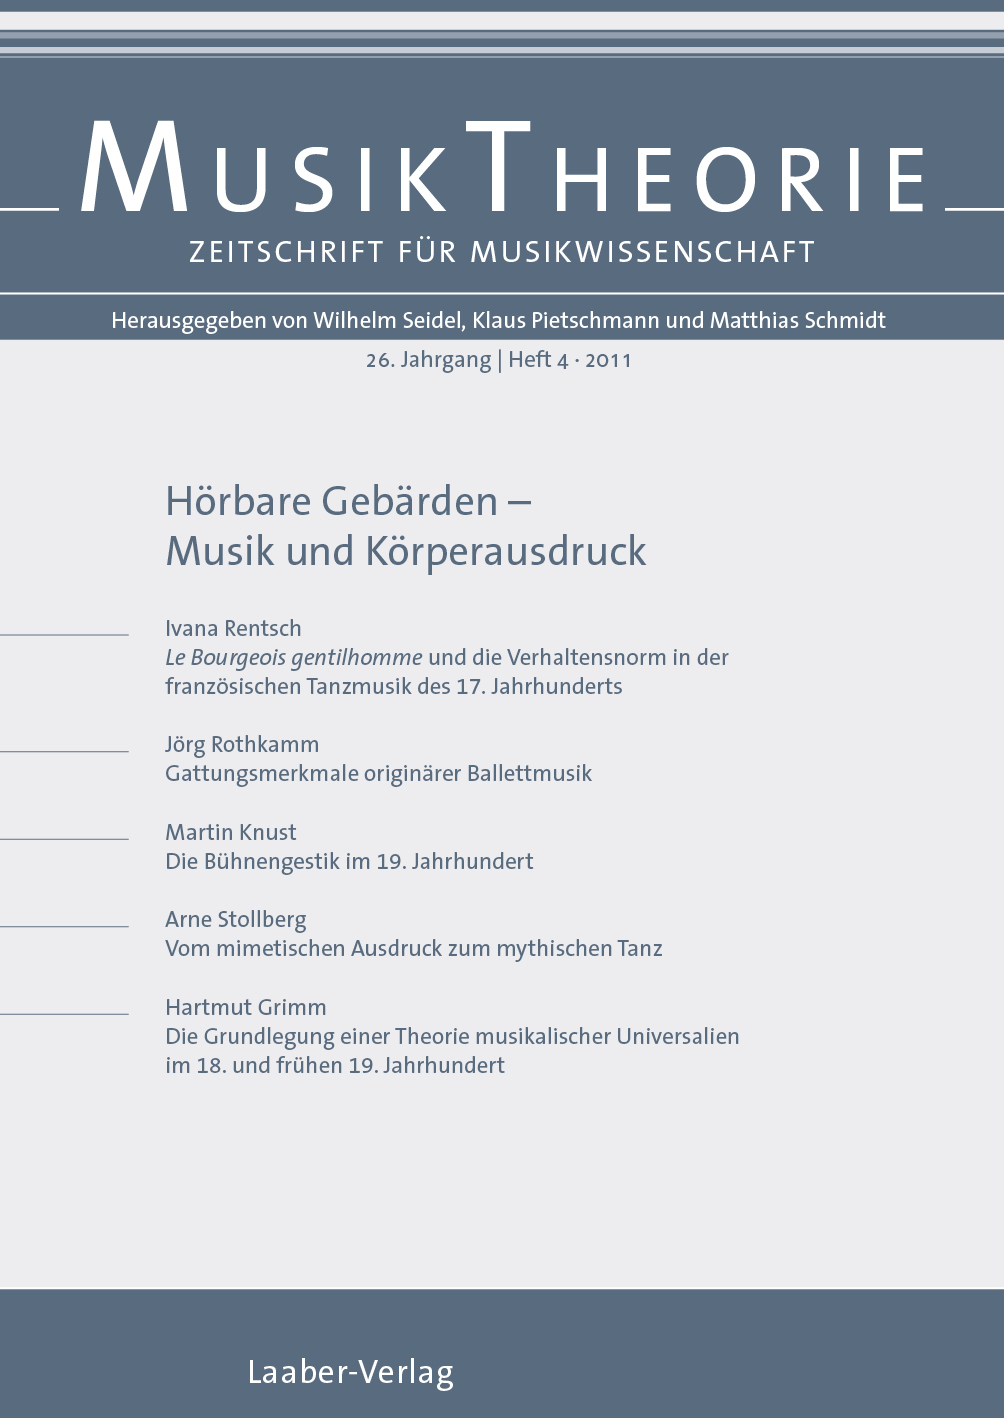 Musiktheorie Heft 4/2011